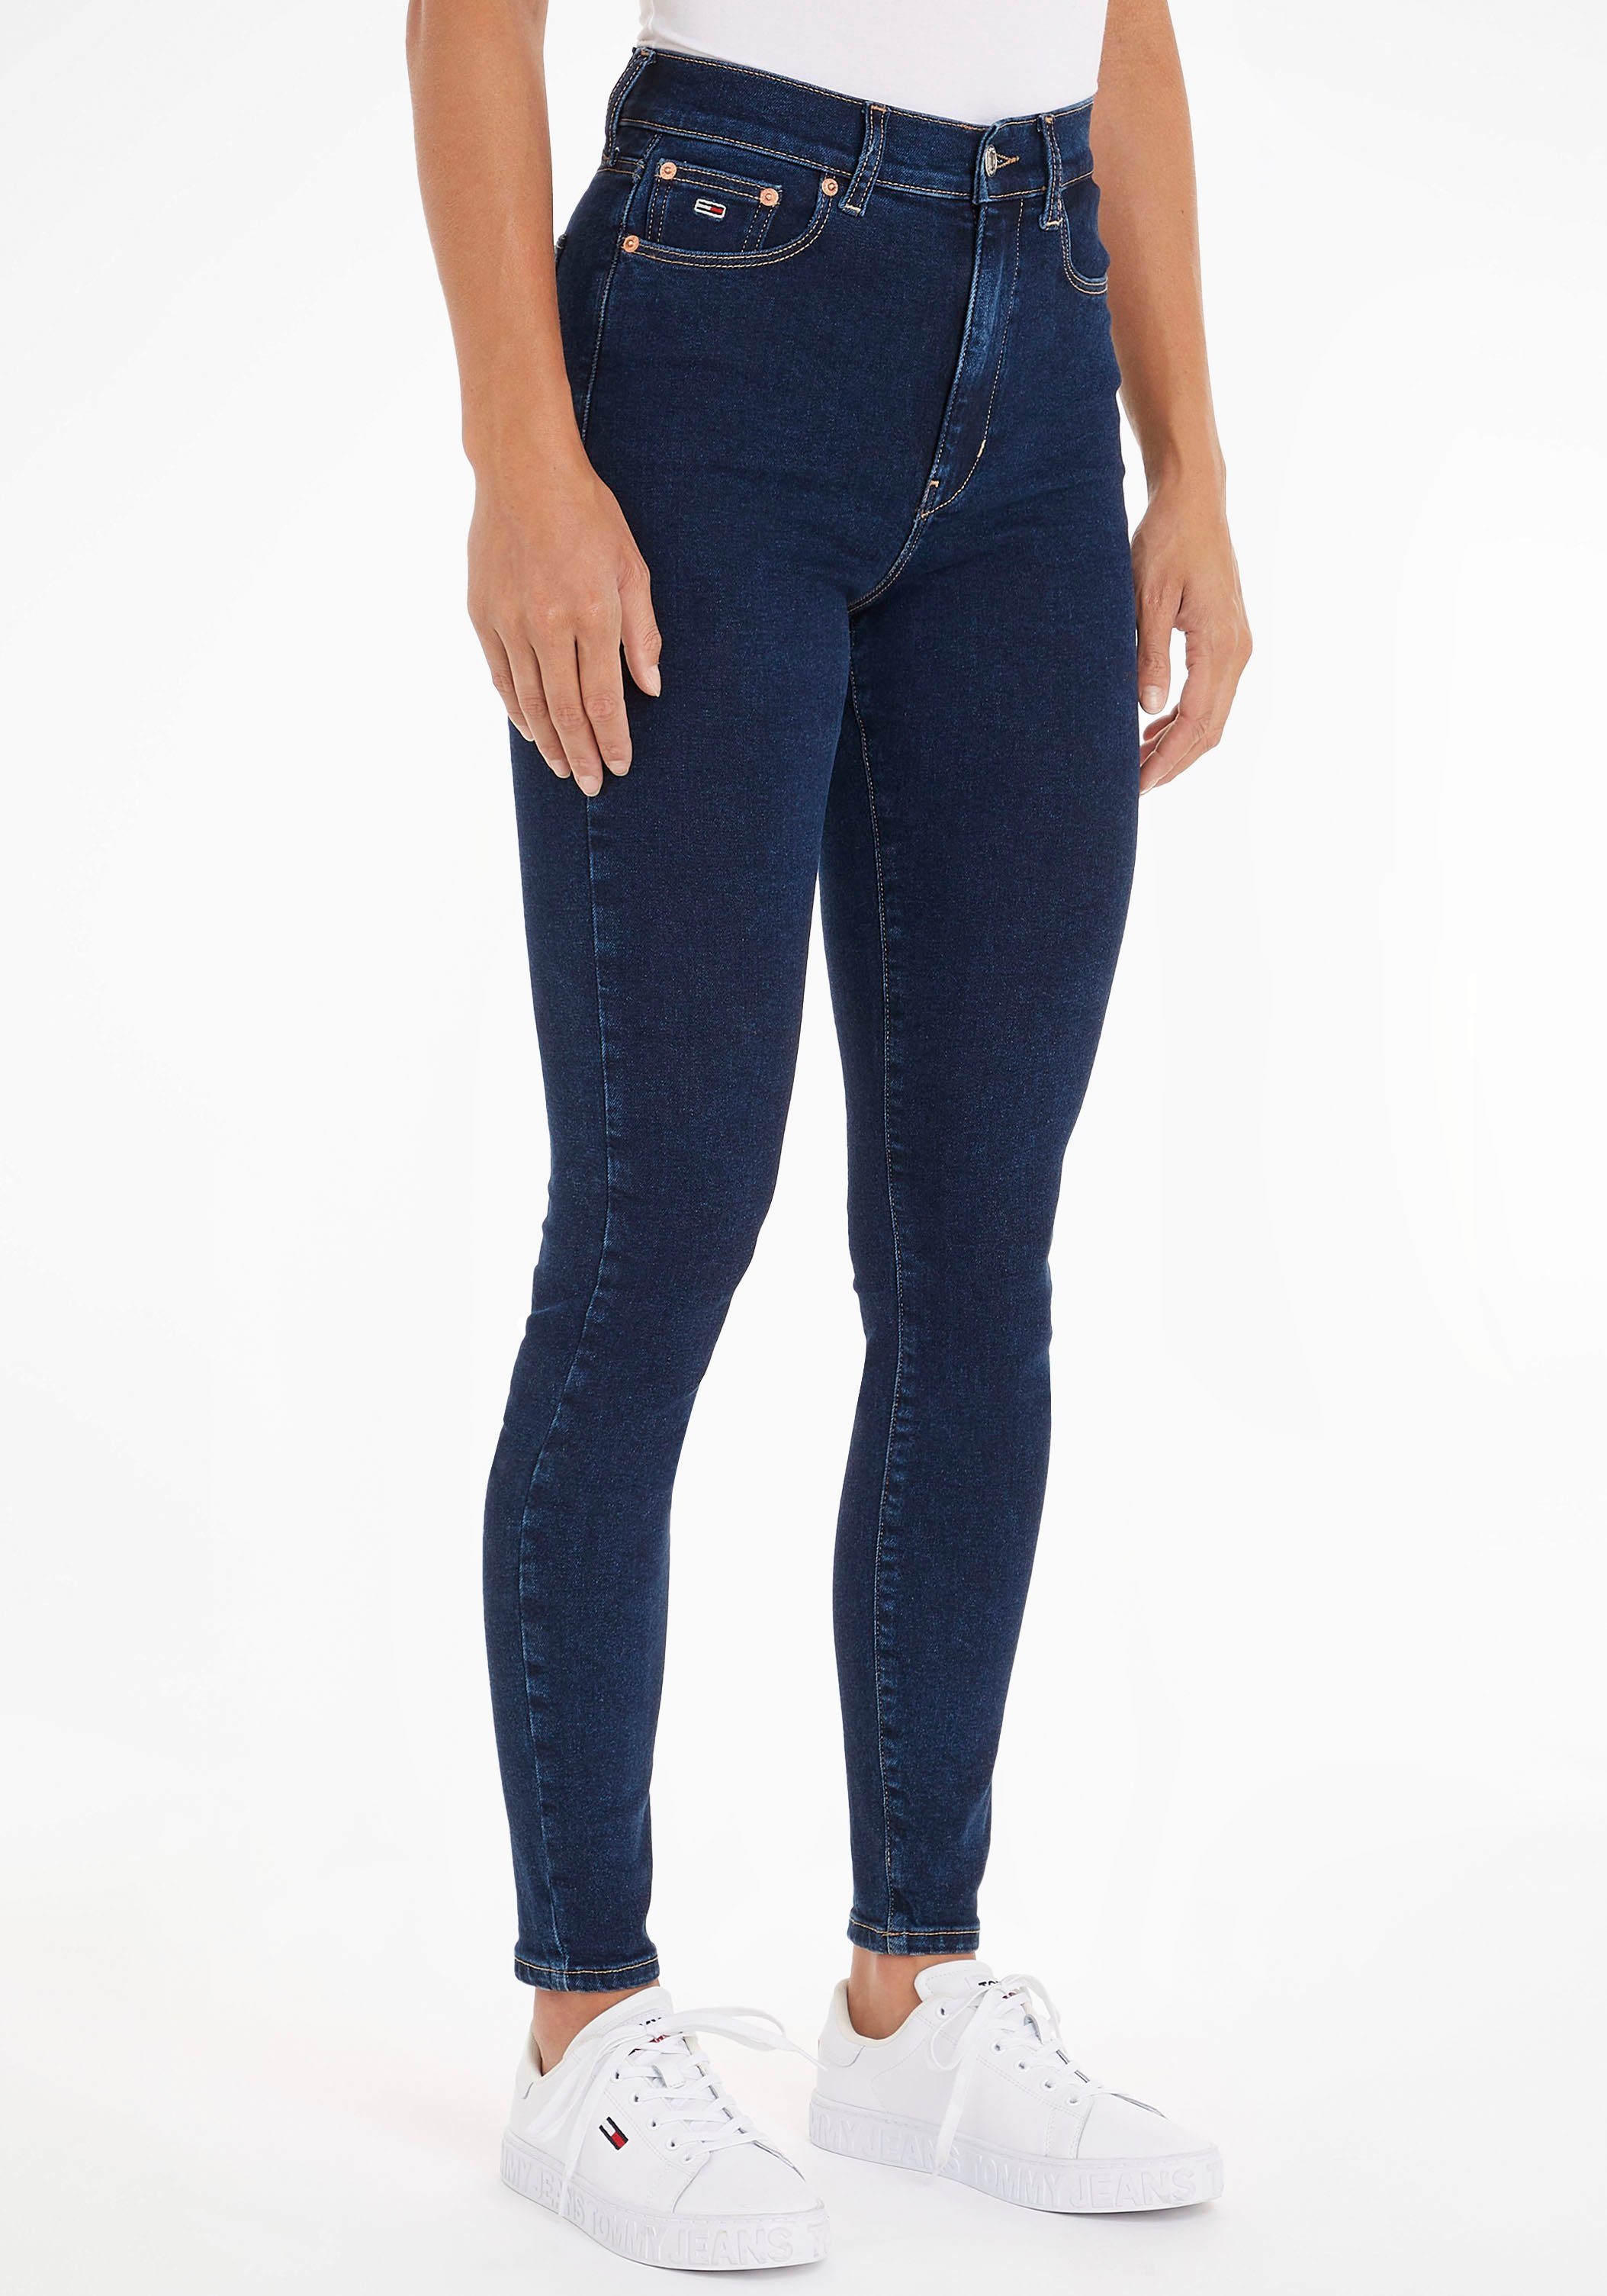 Günstige Jeans für Damen kaufen » Jeanshosen SALE | OTTO